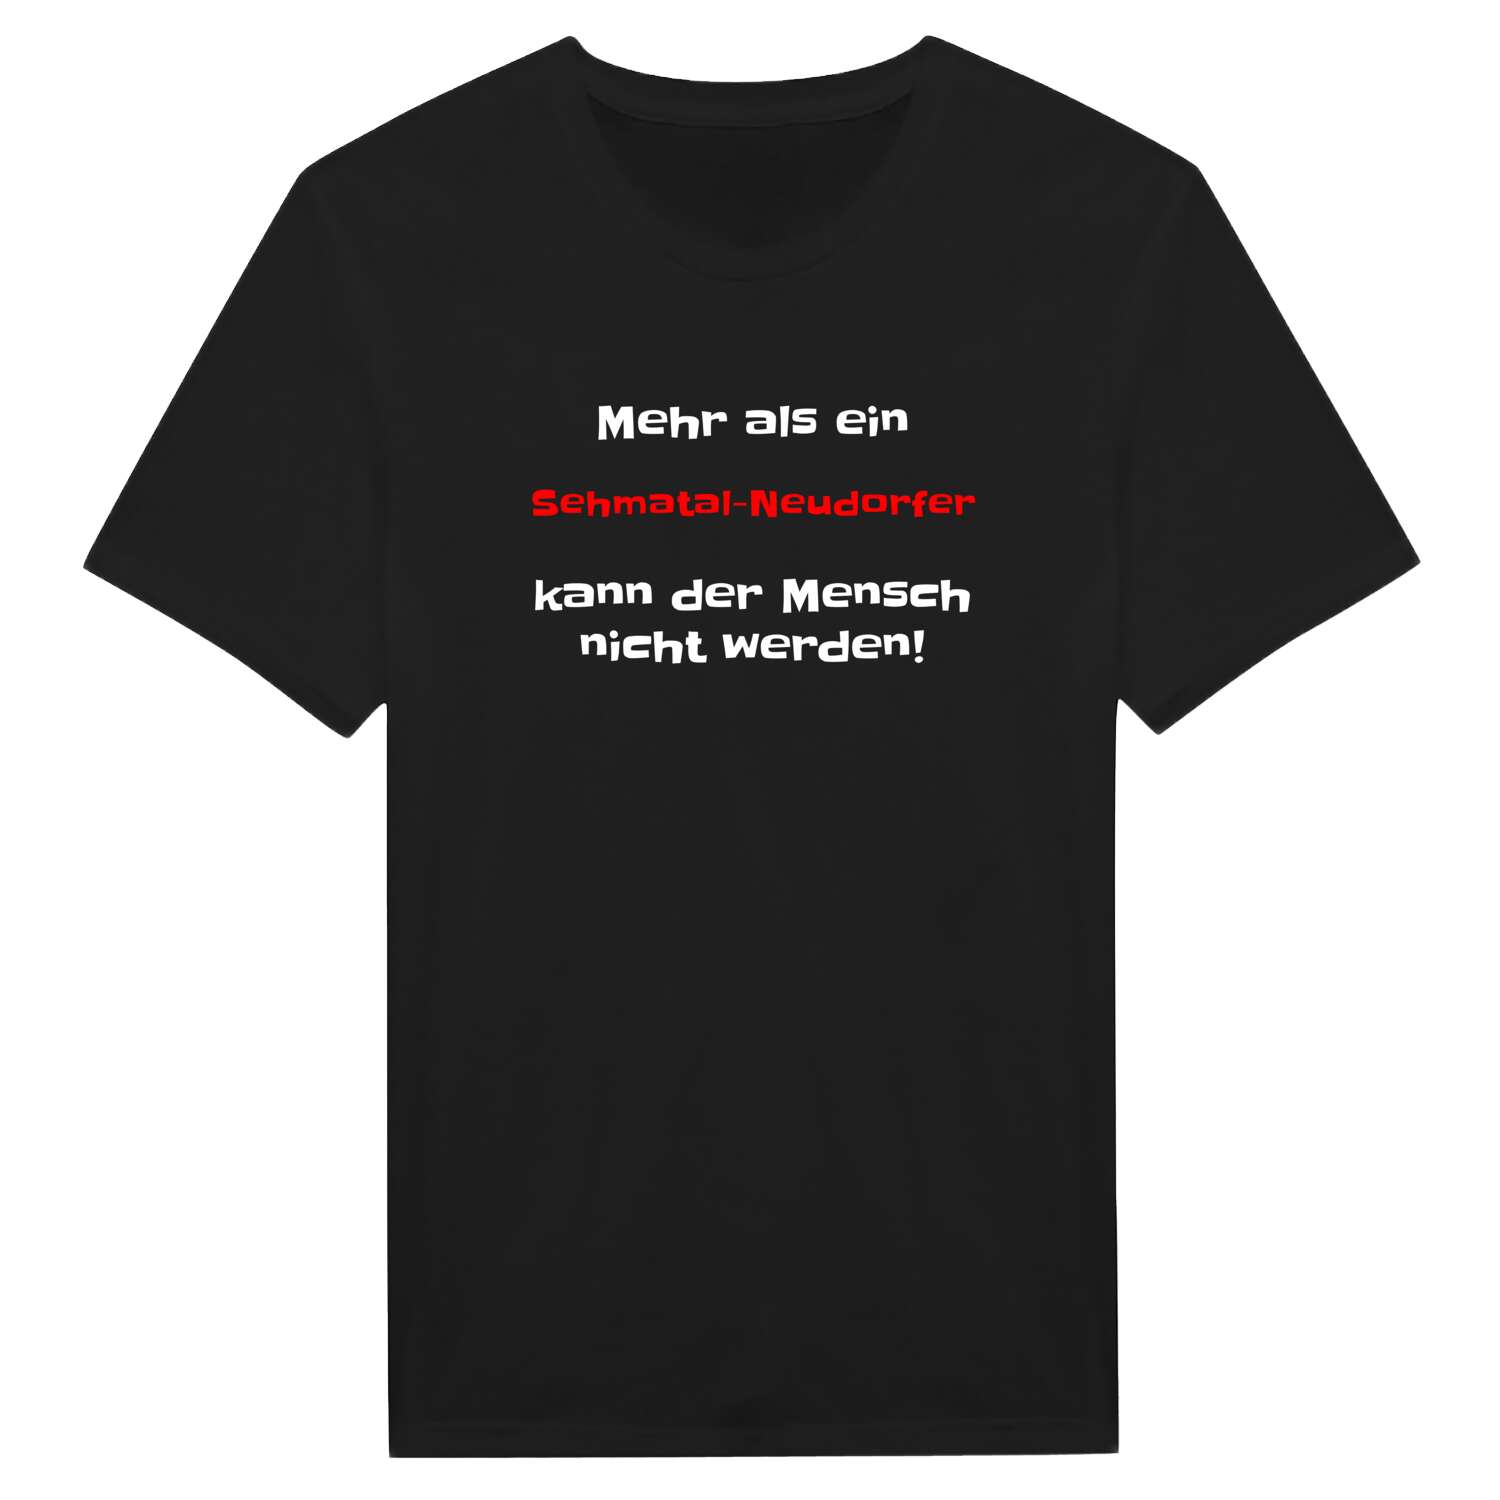 Sehmatal-Neudorf T-Shirt »Mehr als ein«